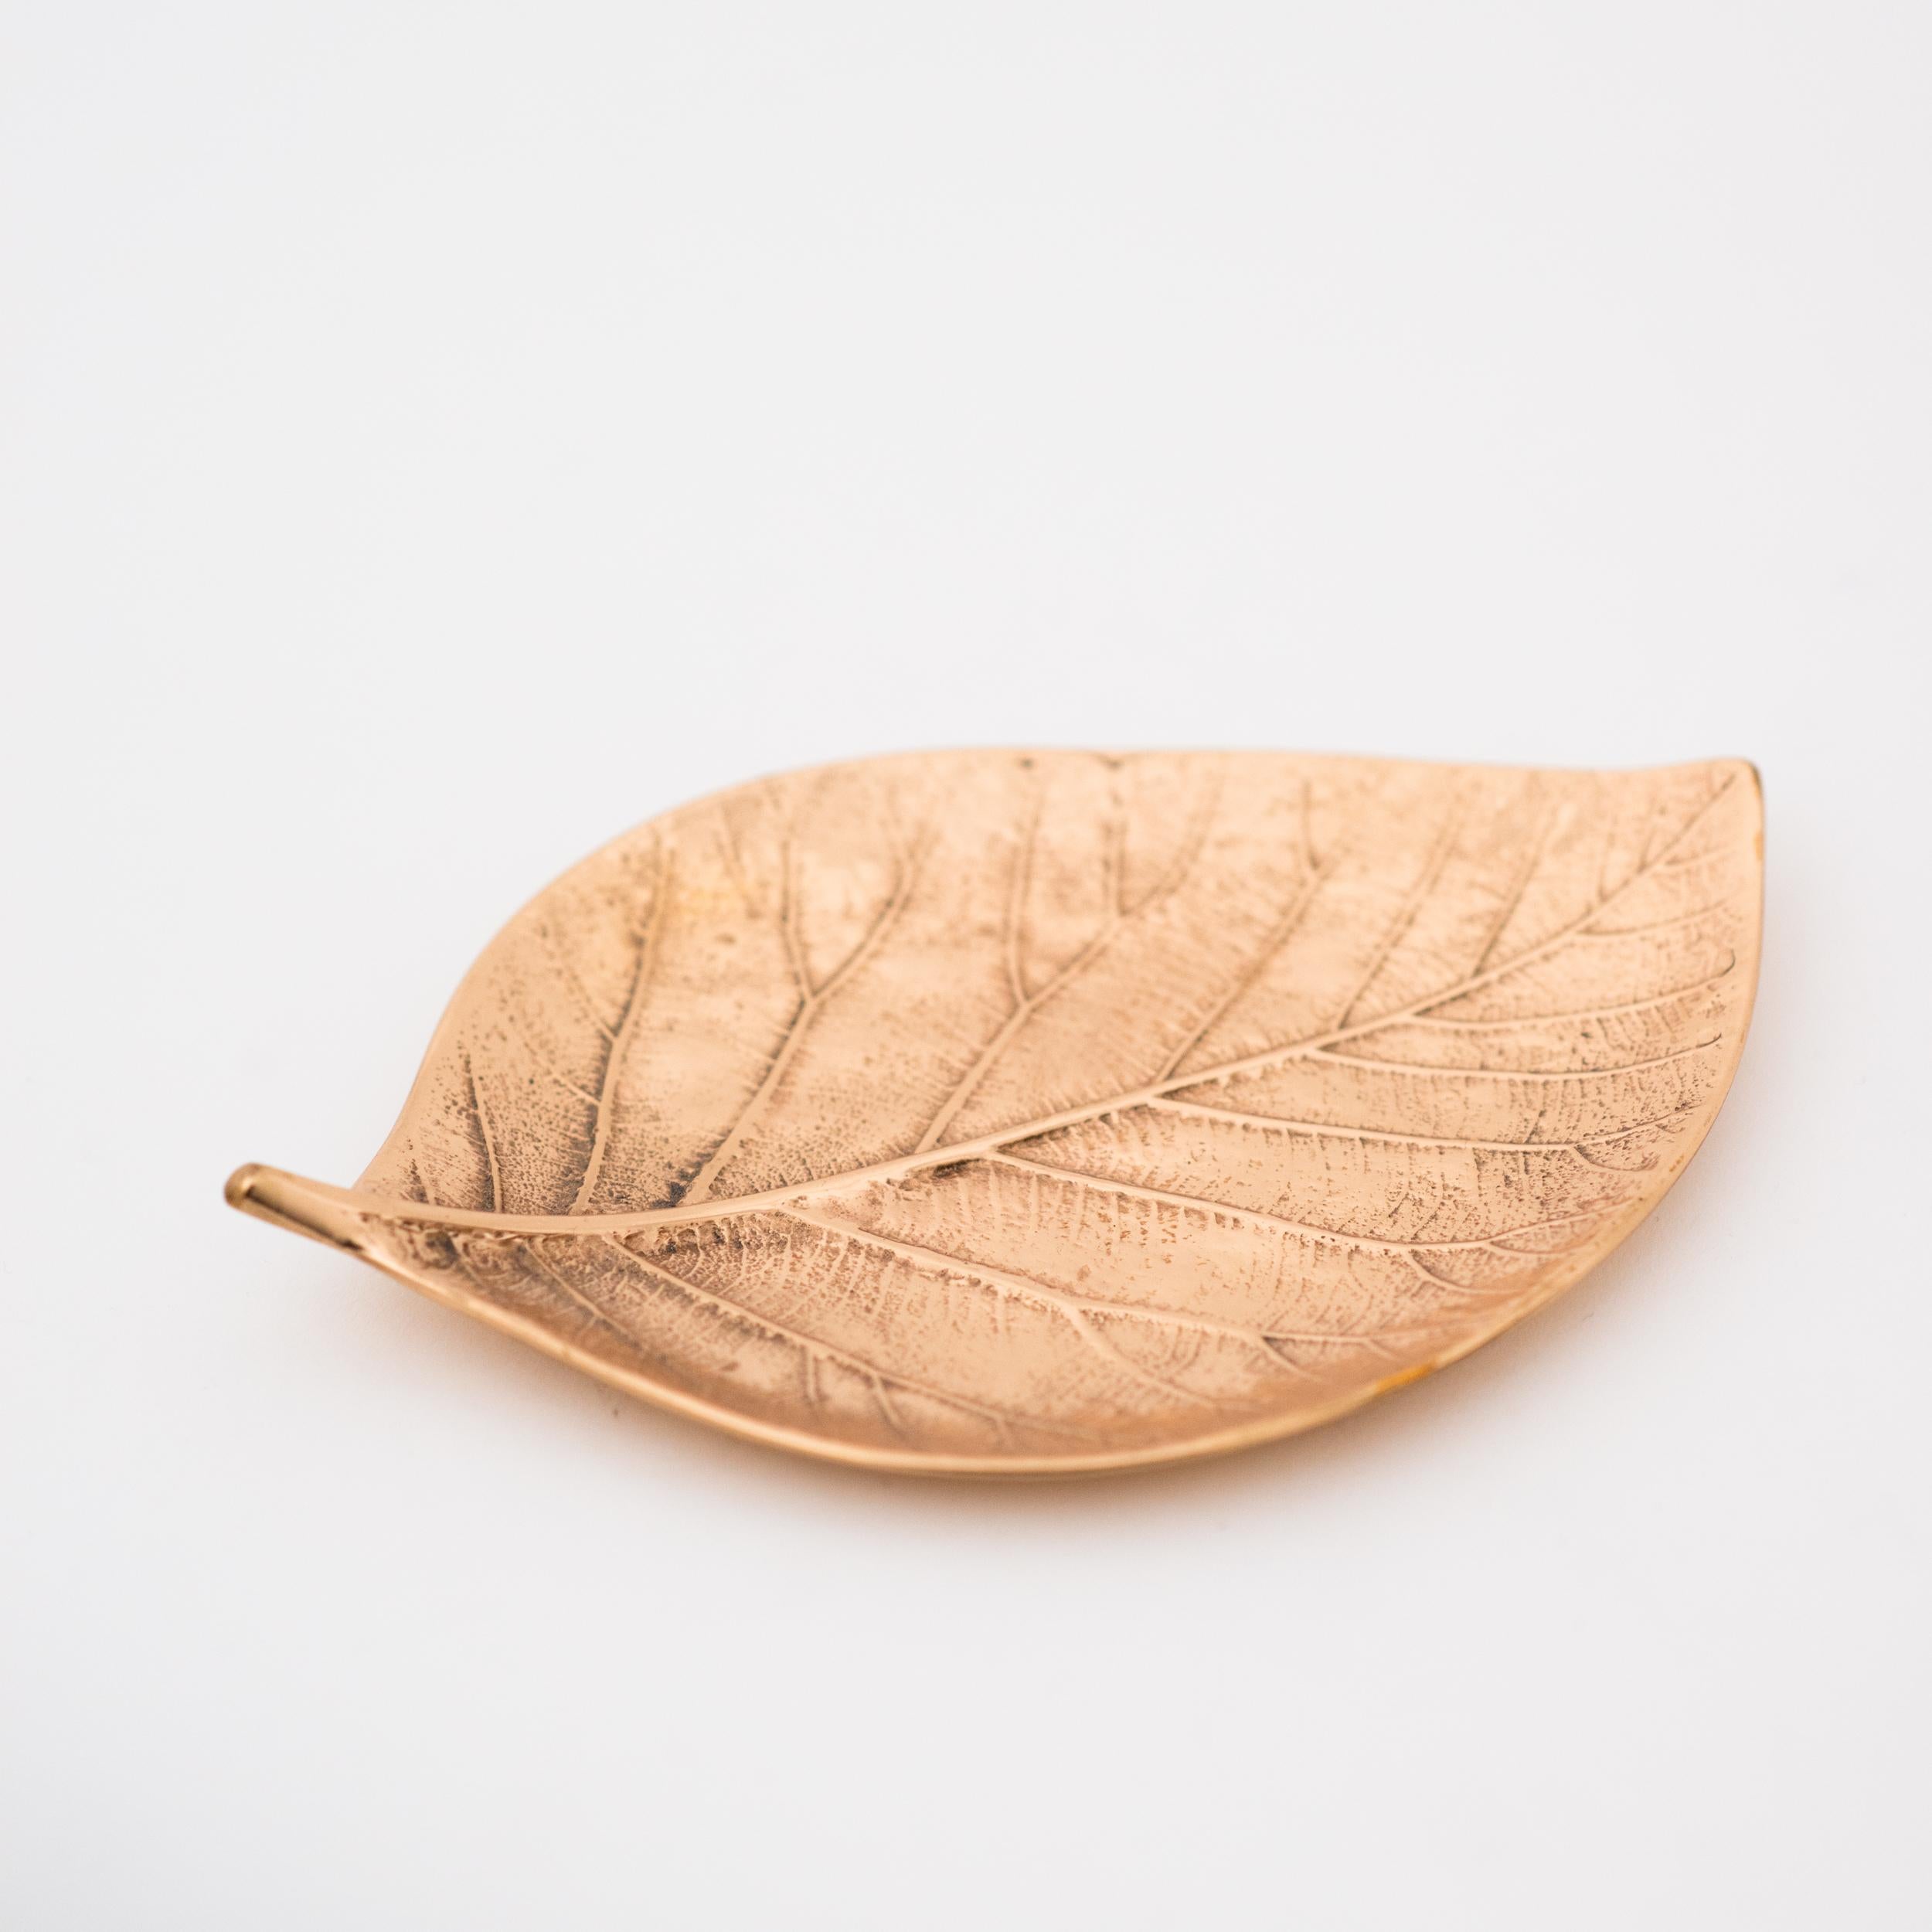 Indian Decorative Handmade Cast Bronze Leaf Vide Poche, Large For Sale